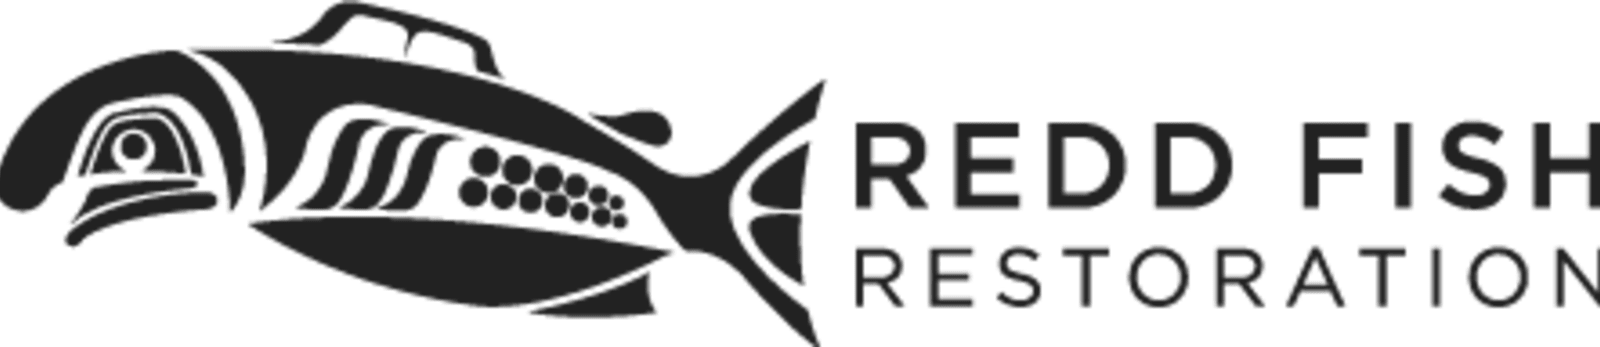 Redd Fish Restoration Society logo